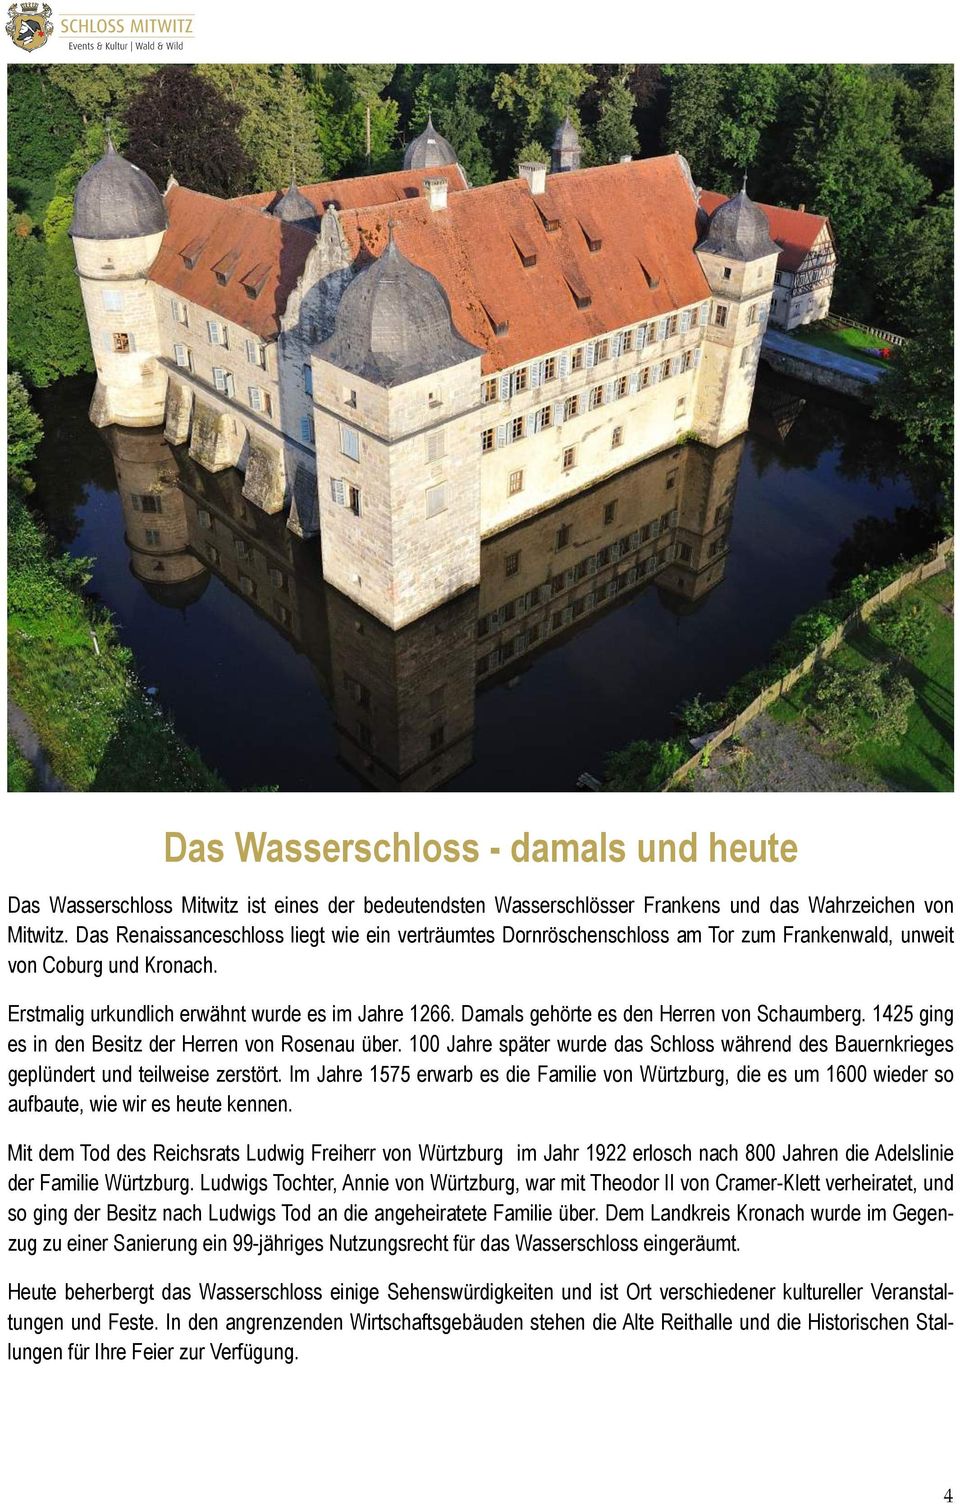 Damals gehörte es den Herren von Schaumberg. 1425 ging es in den Besitz der Herren von Rosenau über. 100 Jahre später wurde das Schloss während des Bauernkrieges geplündert und teilweise zerstört.